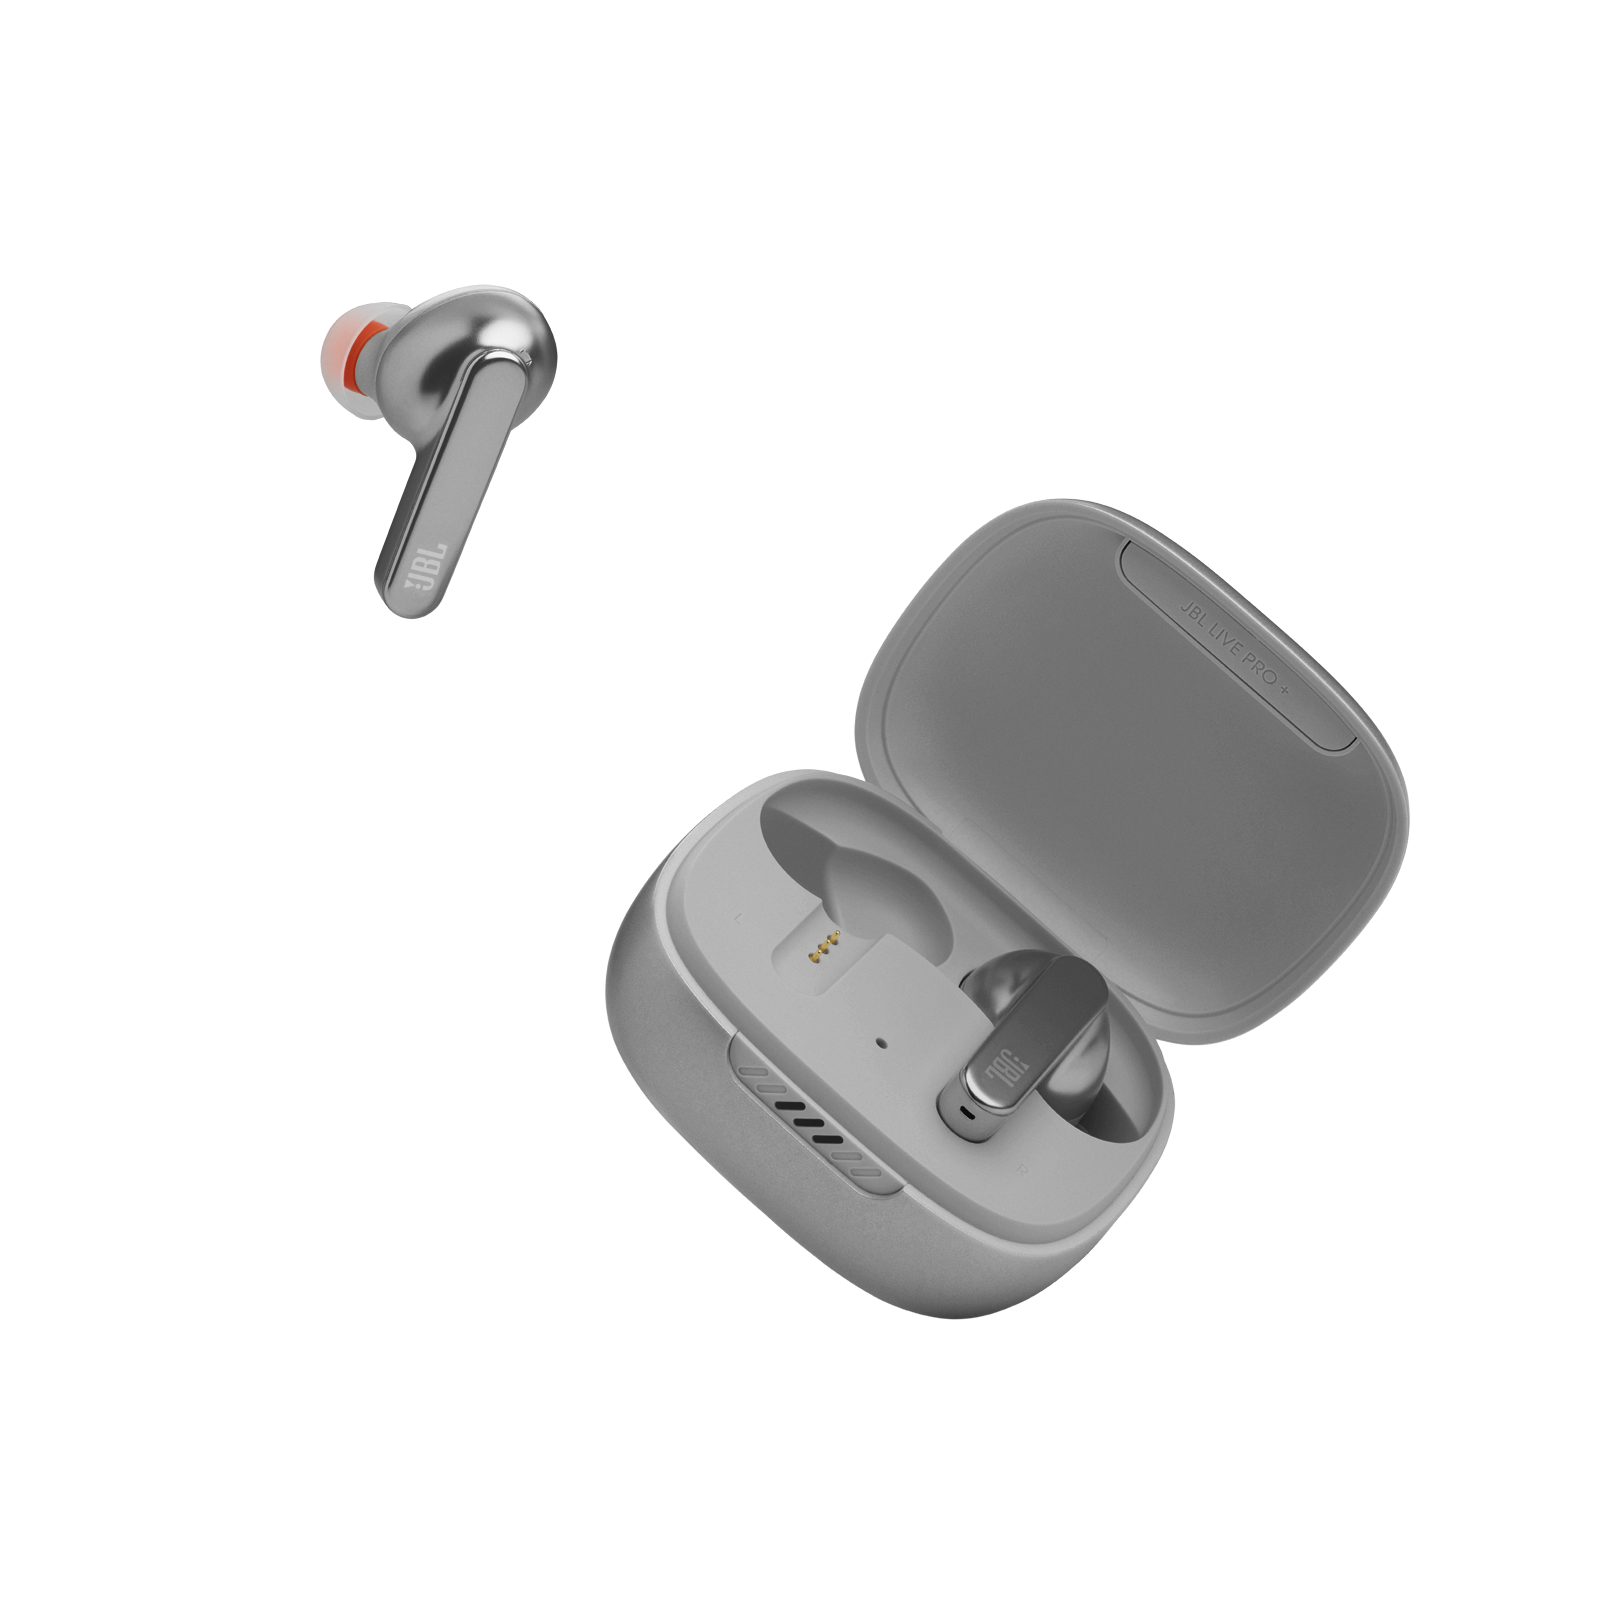 Noise Cancelling 3D Stereo wasserdichte Sport-Headset-Kopfhörer für Apple Airpods Android/iPhone Touch-Kopfhörer mit Mikrofon Bluetooth 5.0 Kabellose Kopfhörer automatische Kopplung 